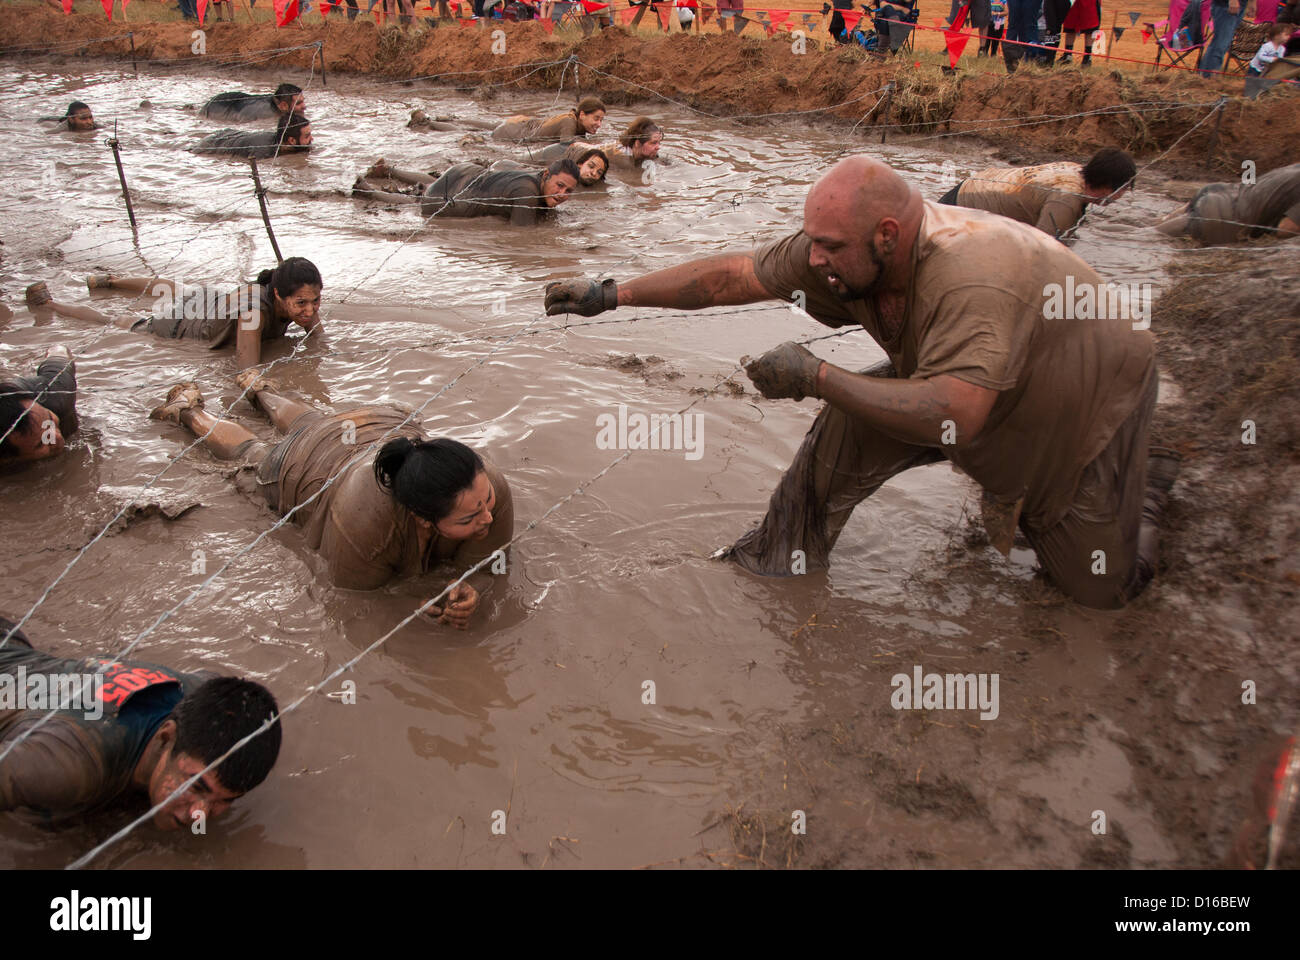 8 décembre 2012 San Antonio, Texas, USA - Les personnes à vaincre l'obstacle de boue pendant le Gladiateur Rock'n courir à San Antonio. Banque D'Images